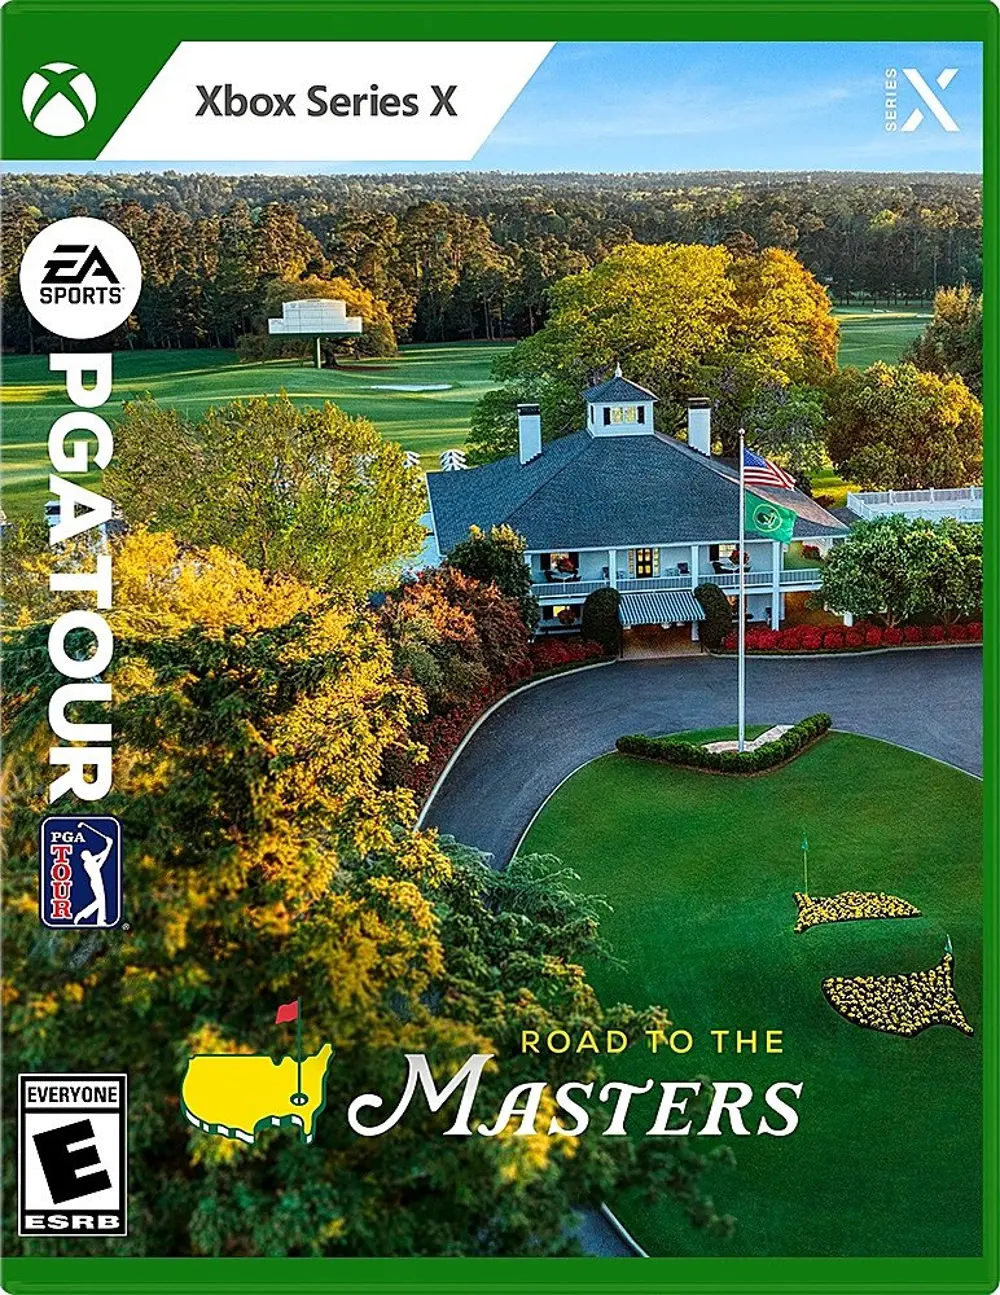 XSX/PGA_TOUR:MASTER EA Sports PGA Tour Road To The Masters - Xbox Series X-1